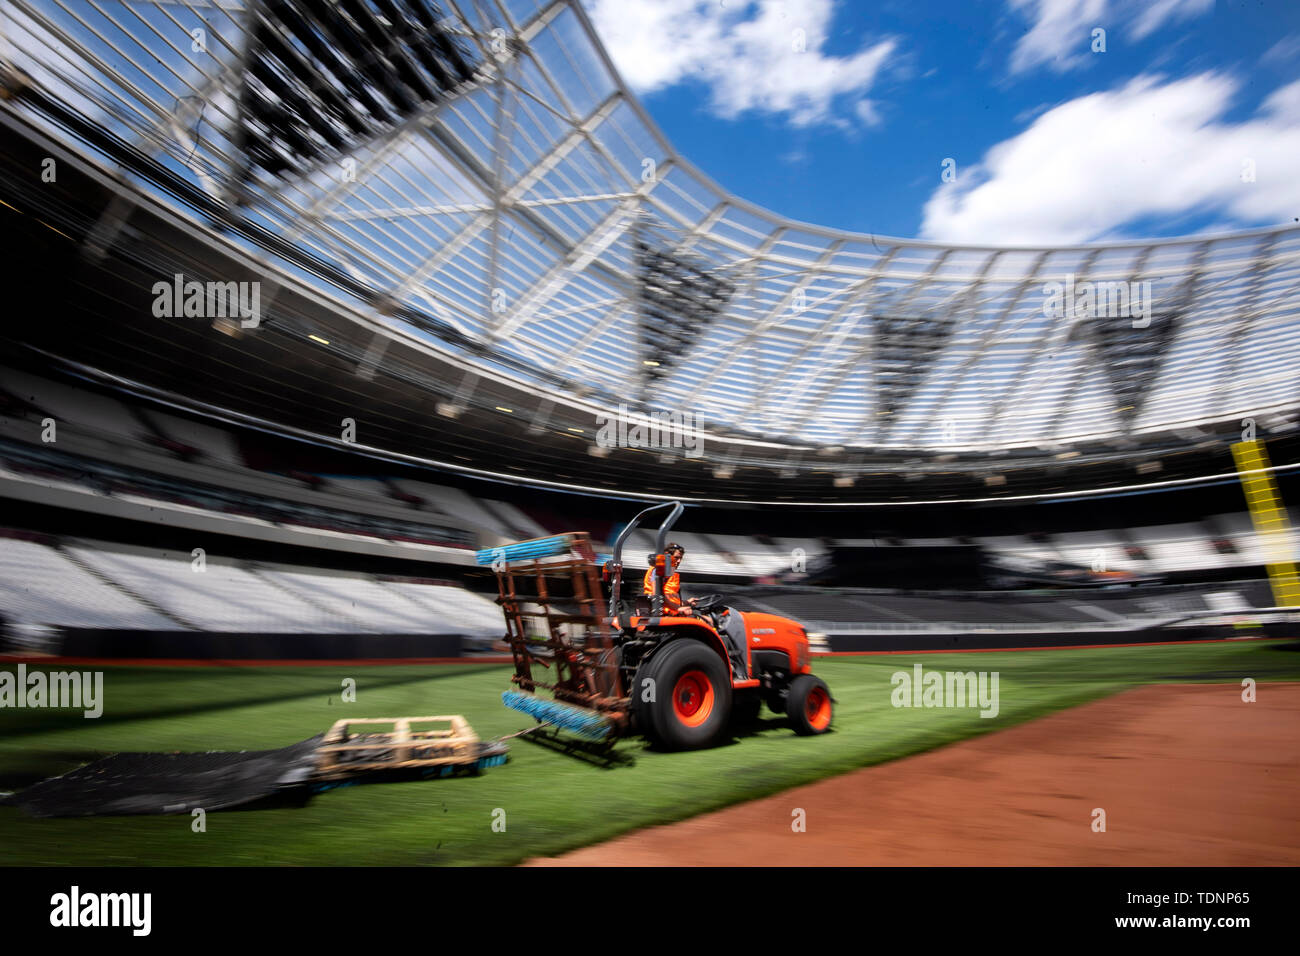 Se están haciendo preparativos para transformar el estadio en Londres Londres desde un campo de fútbol a un campo de béisbol, por delante de la primera temporada regular de Major League Baseball serie que se producen en Europa, cuando Boston Red Sox juegan los Yankees de Nueva York. Foto de stock